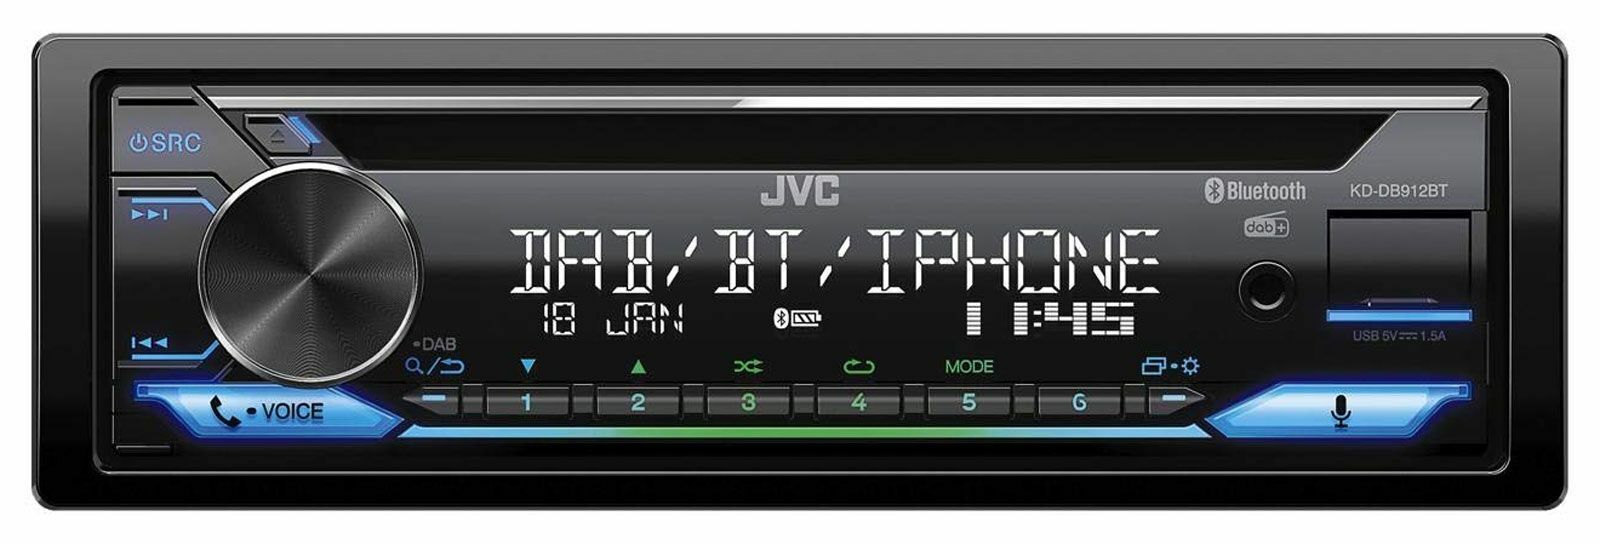 JVC KD-DB912BT CDMP3-Autoradio DAB Bluetooth USB iPod AUX-IN